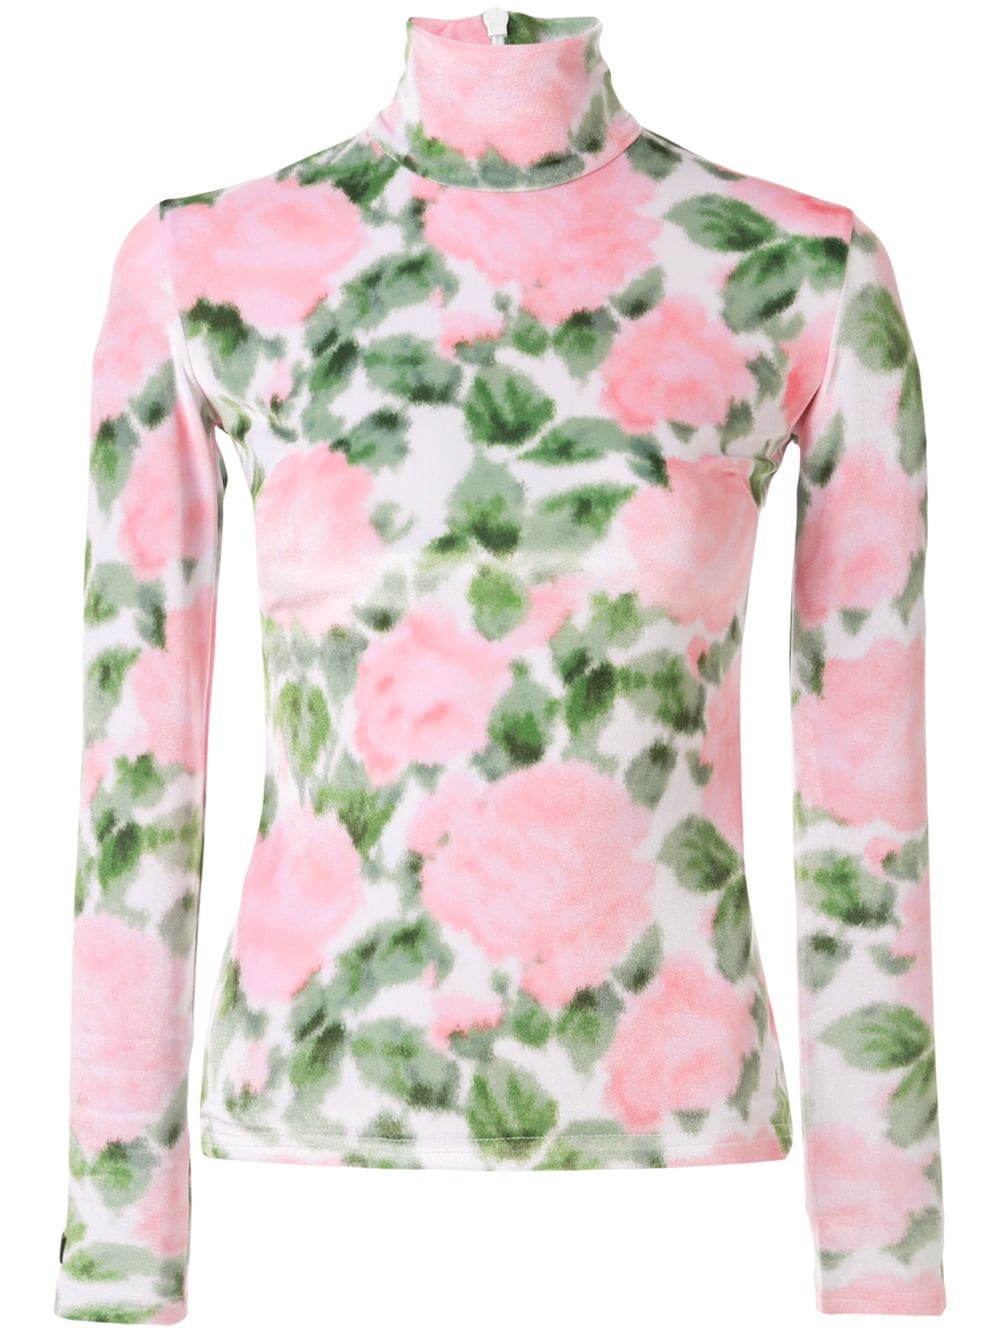 фото Richard quinn велюровая блузка с цветочным принтом